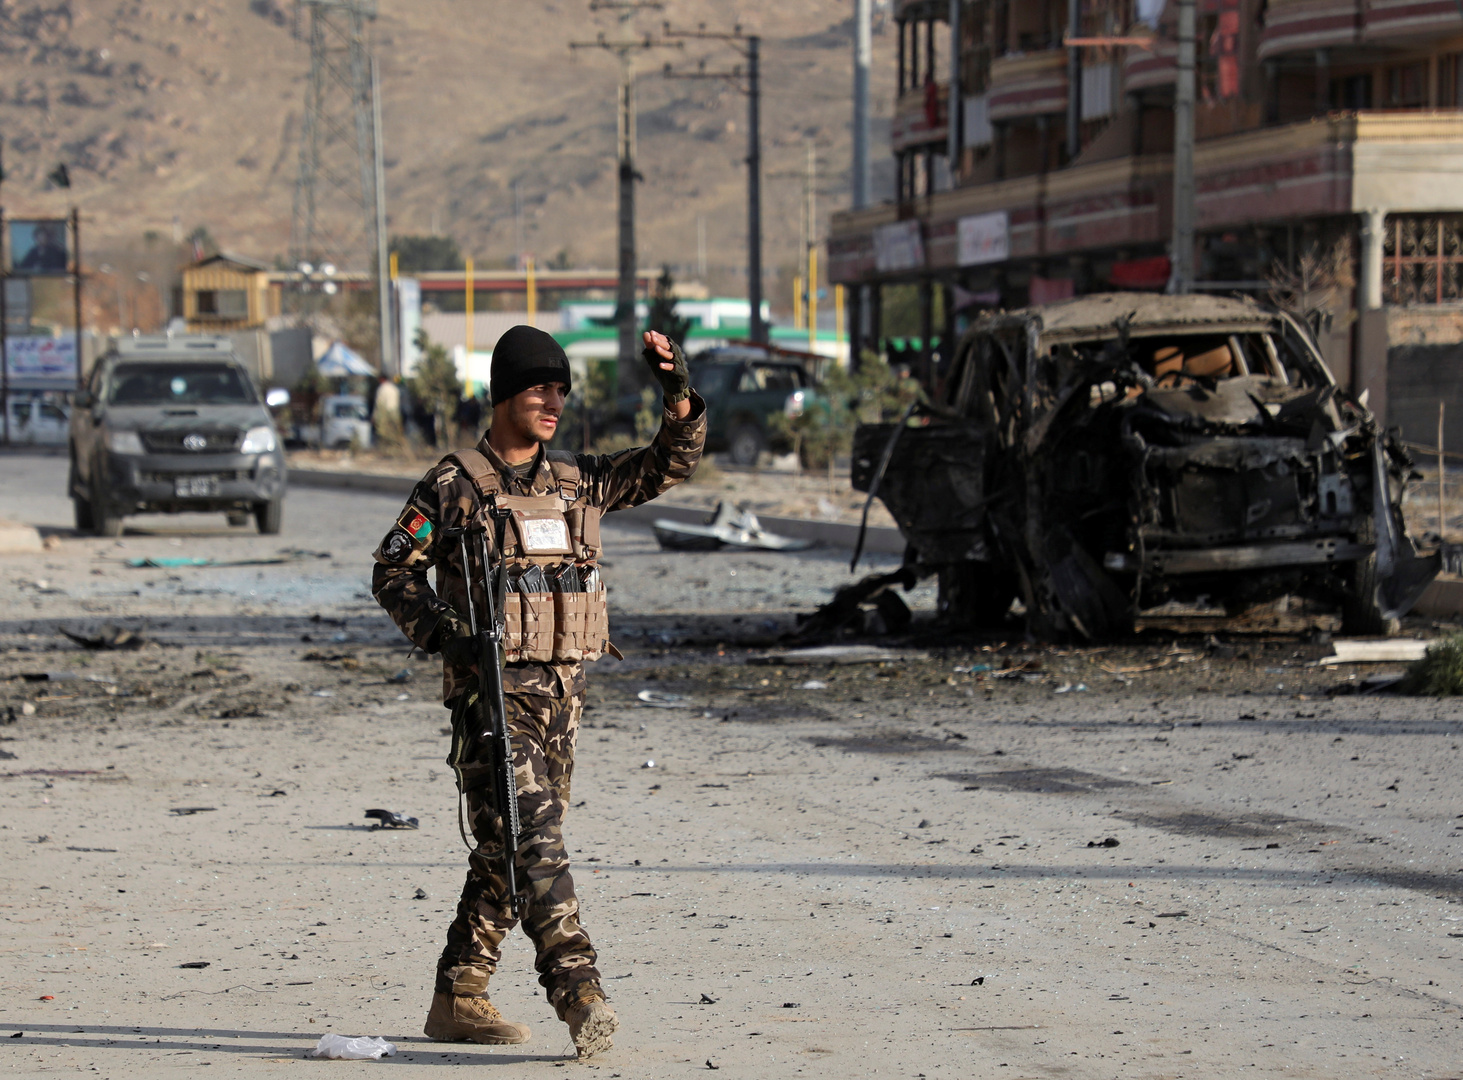 12 قتيلا وأكثر من 100 جريح جراء انفجار قرب مقر للشرطة وسط أفغانستان